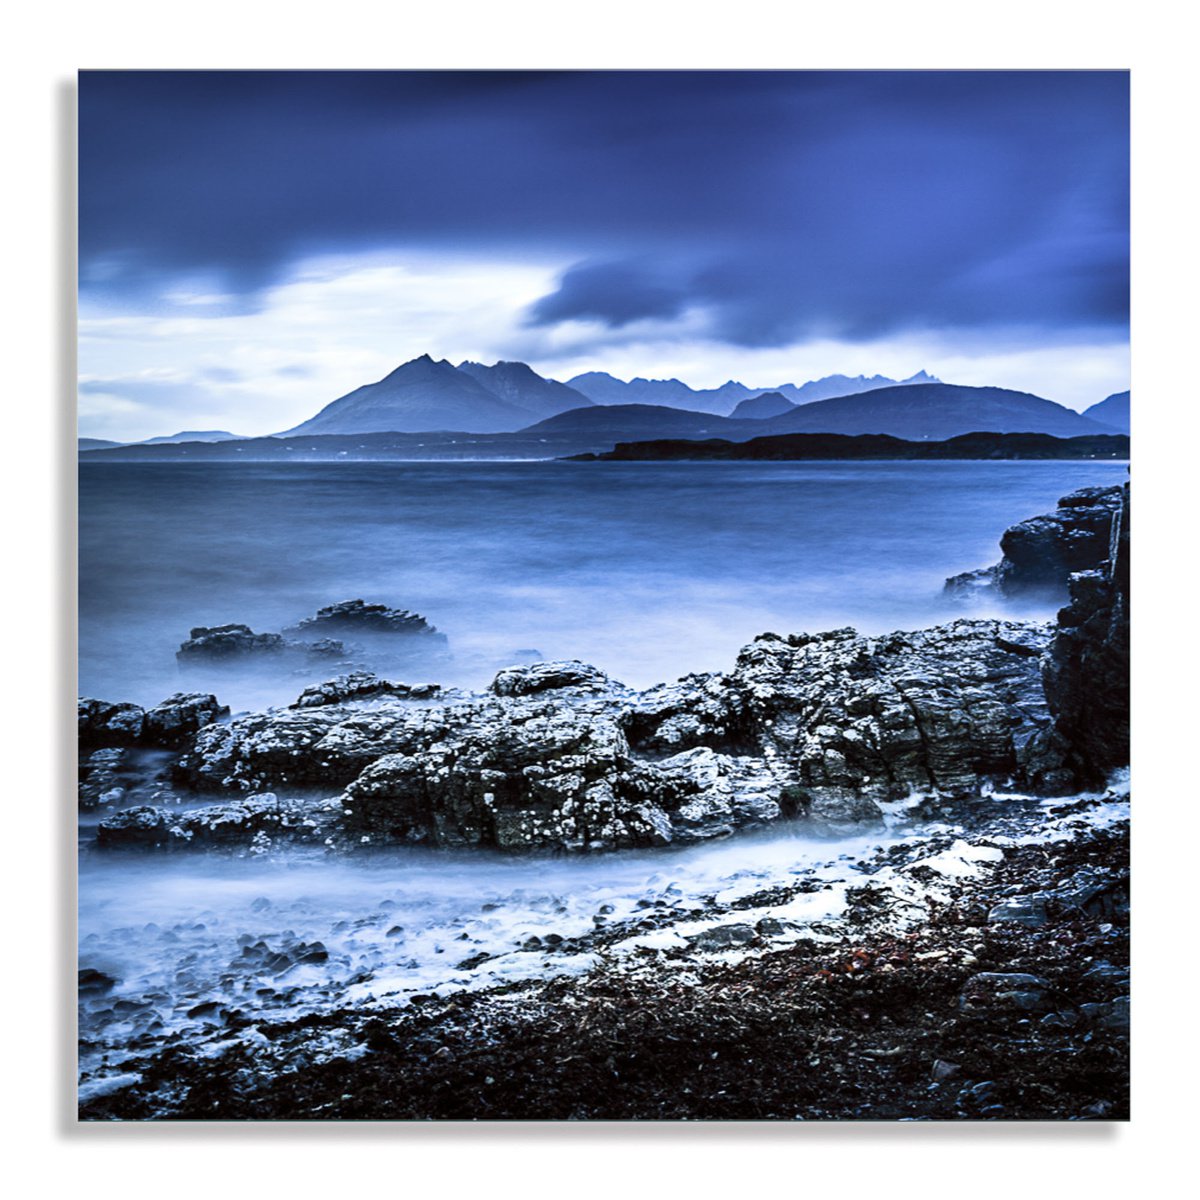 Isle of Skye Mountains - The Black Cuillin by Lynne Douglas